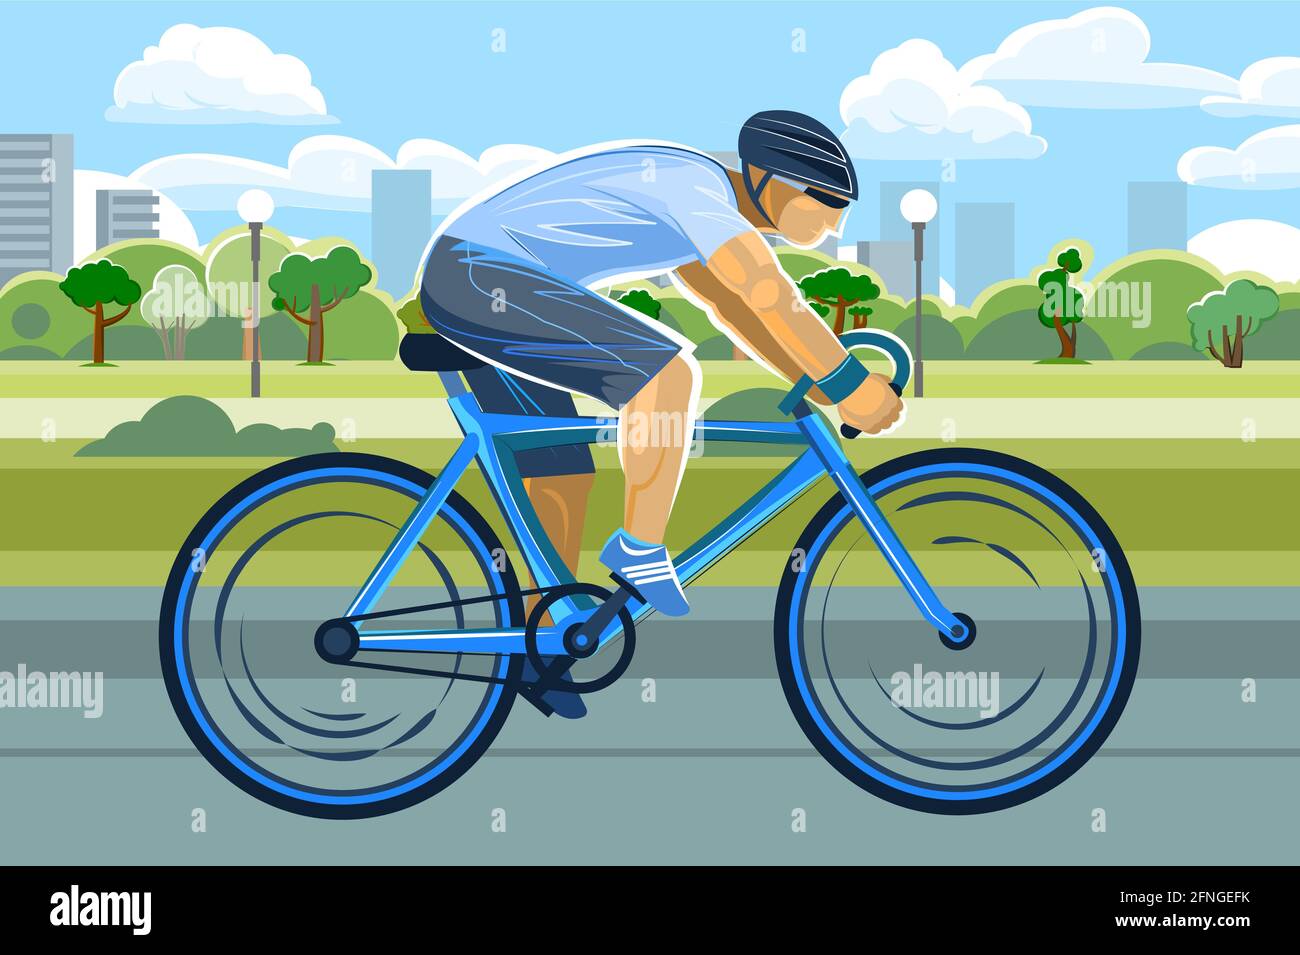 Der Boyin ein Helm fährt ein Fahrrad. Radfahren. Fitness und gesunder Lebensstil. Flacher Cartoon-Stil. Vor der Kulisse eines Parks in einer Großstadt Stock Vektor